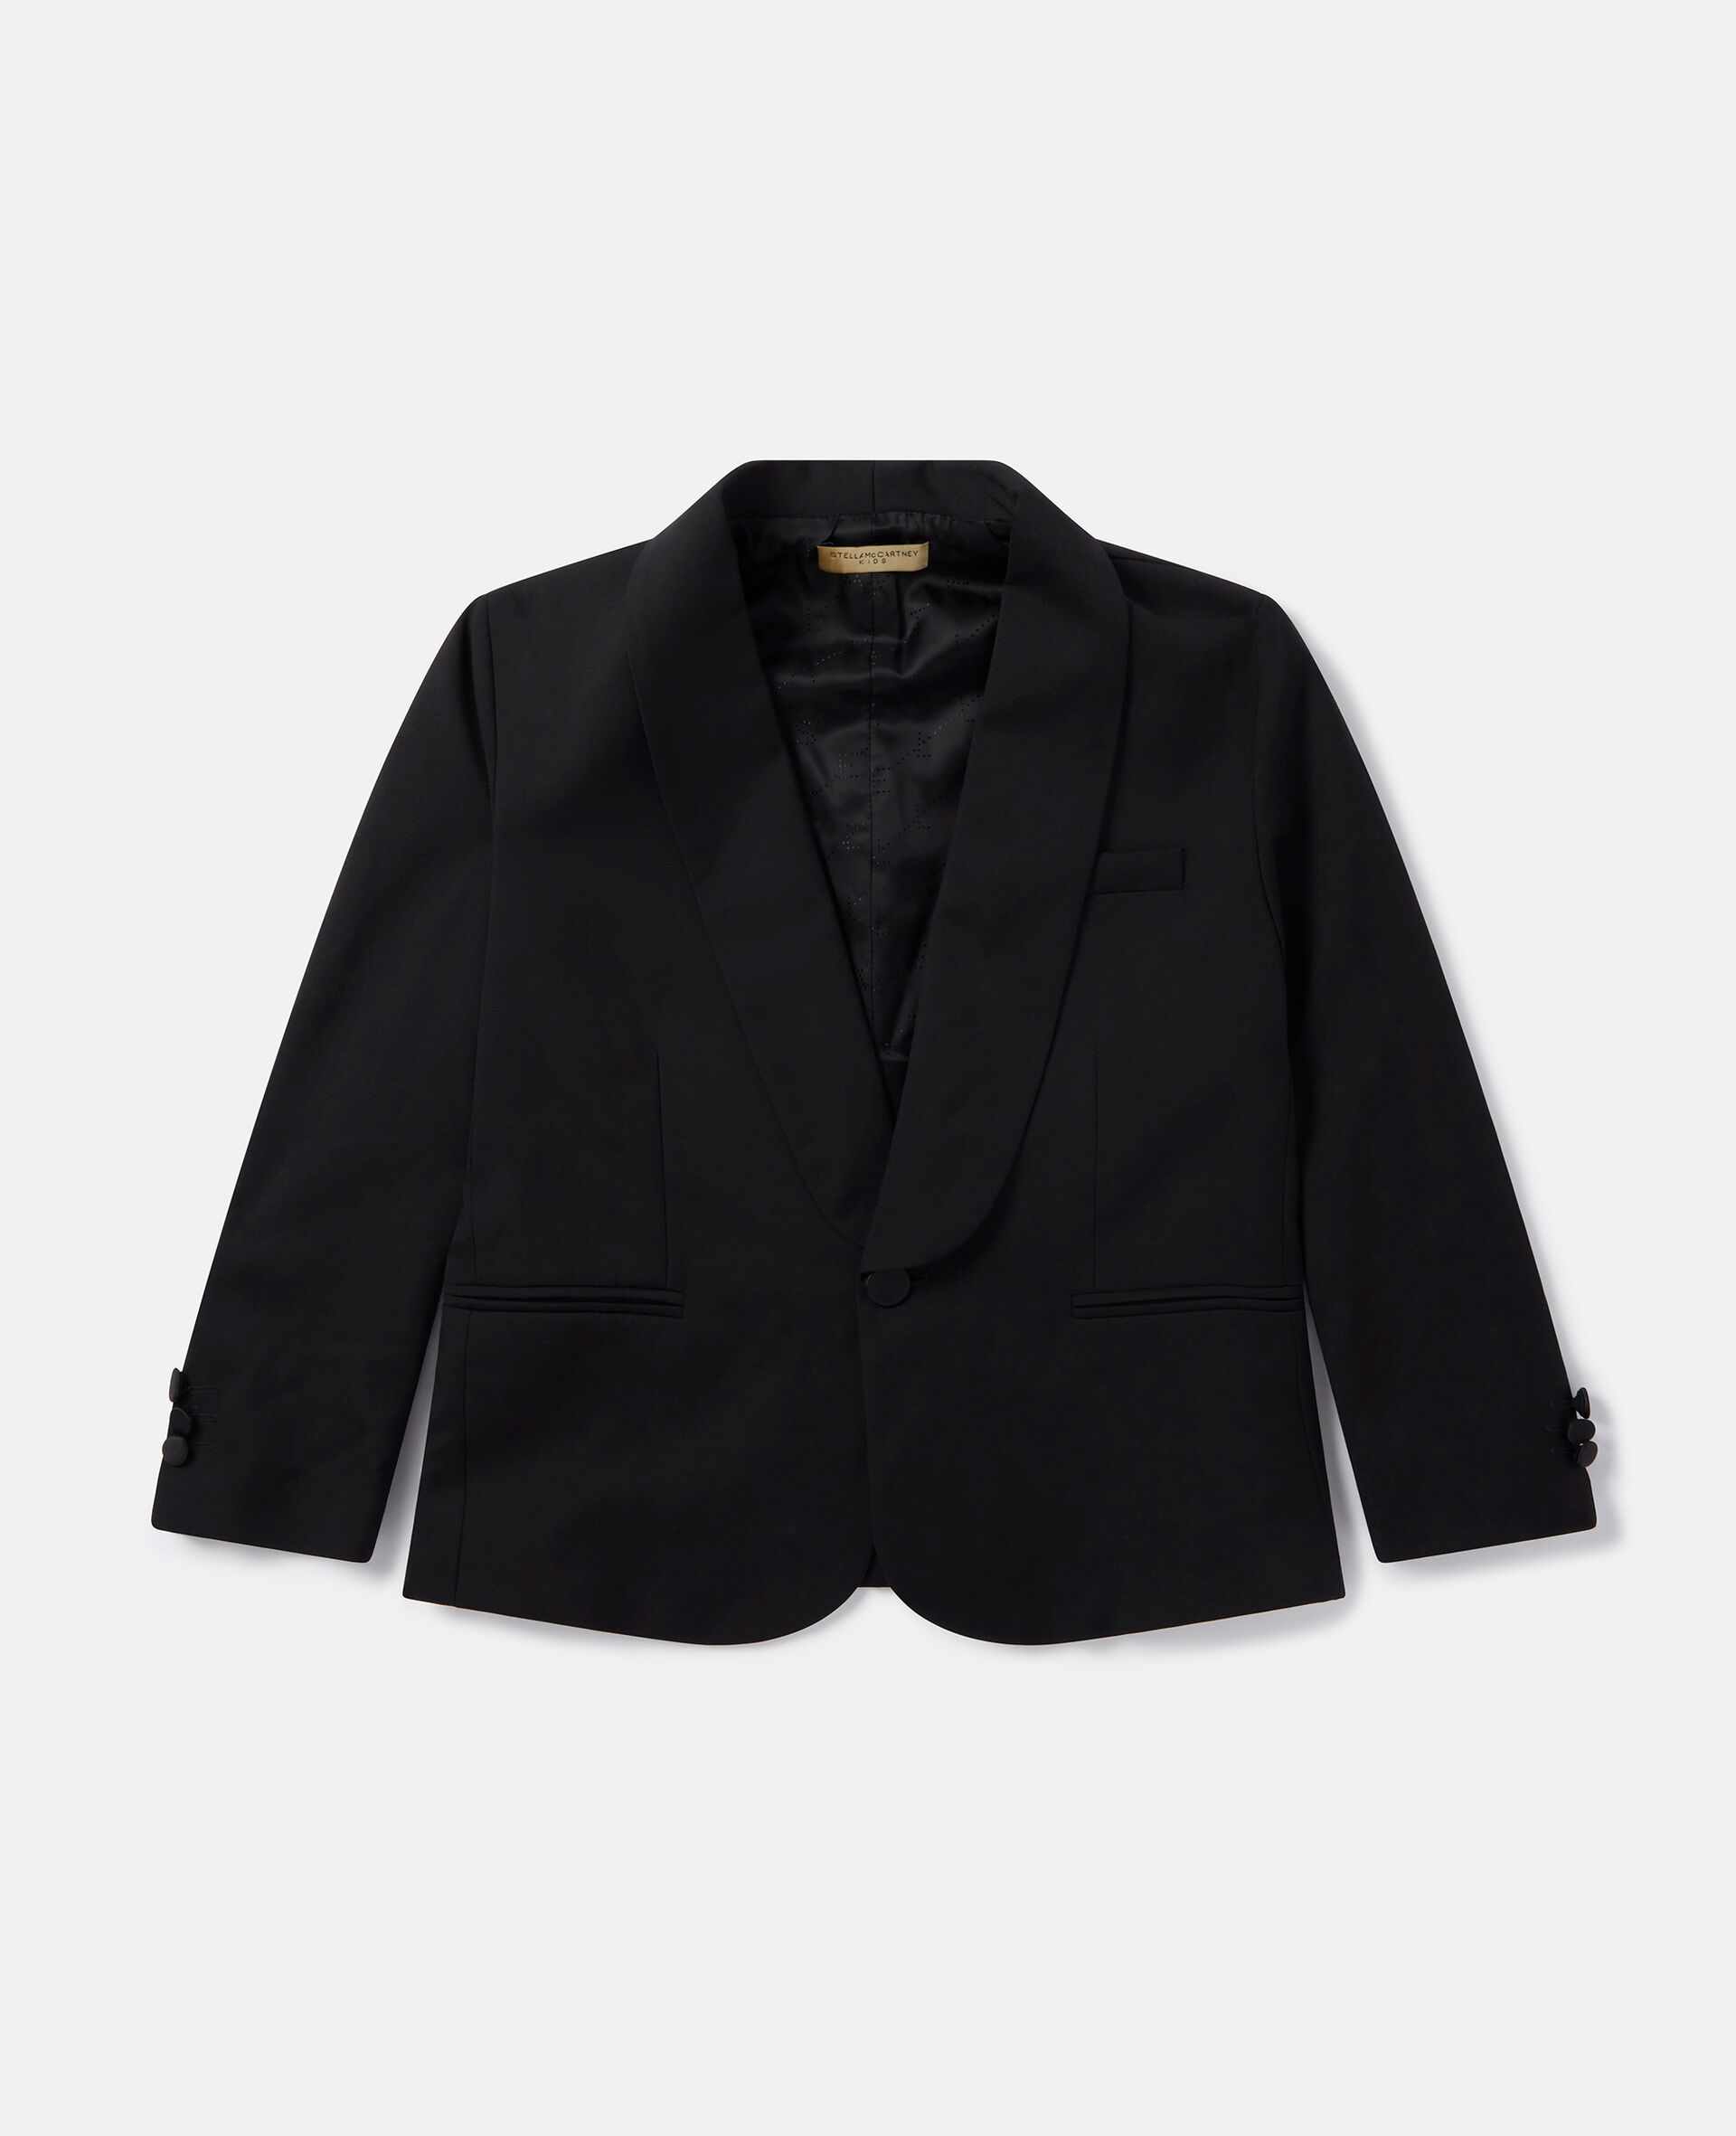 Tuxedo Jacket-Black-large image number 0